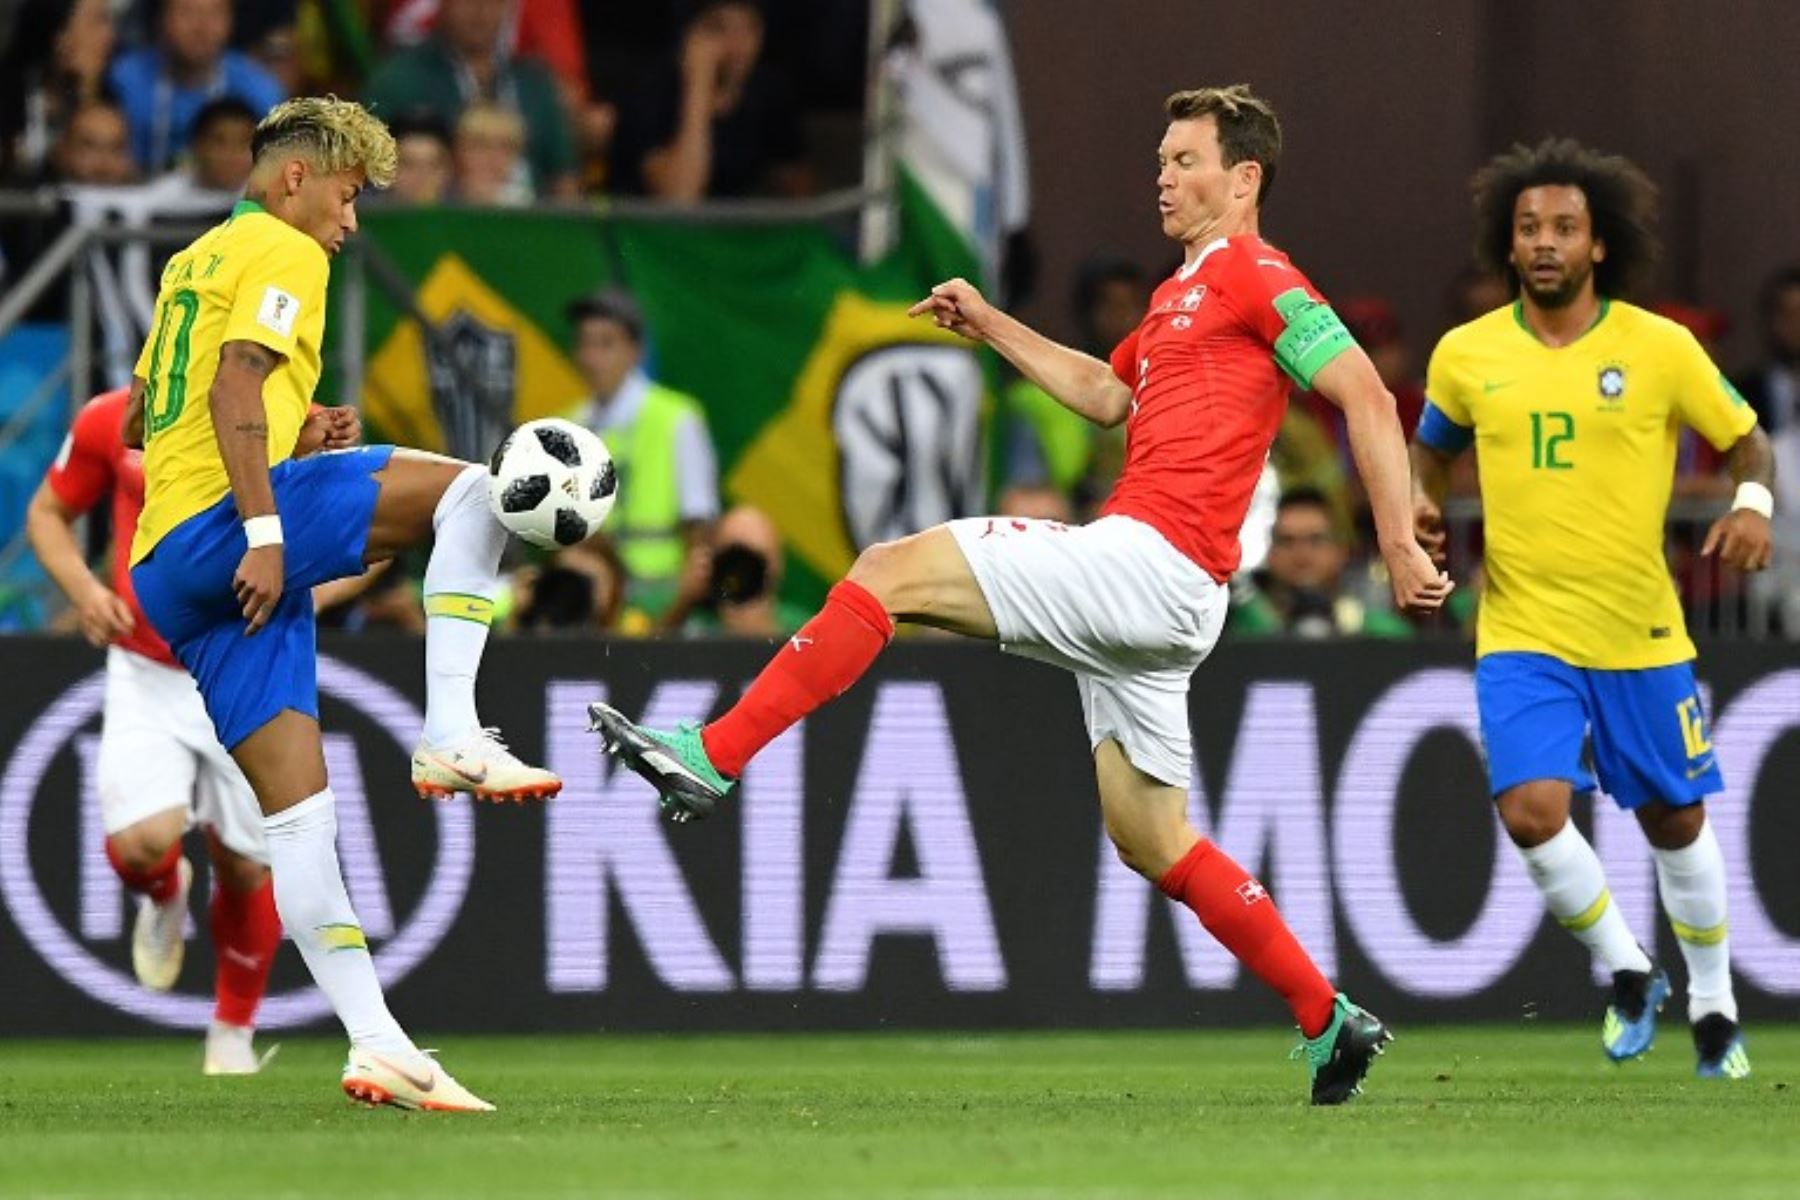 El delantero brasileño Neymar y el defensor suizo Stephan Lichtsteiner compiten por el balón durante el partido de fútbol del Grupo E de la Copa Mundial Rusia 2018 entre Brasil y Suiza.Foto:AFP